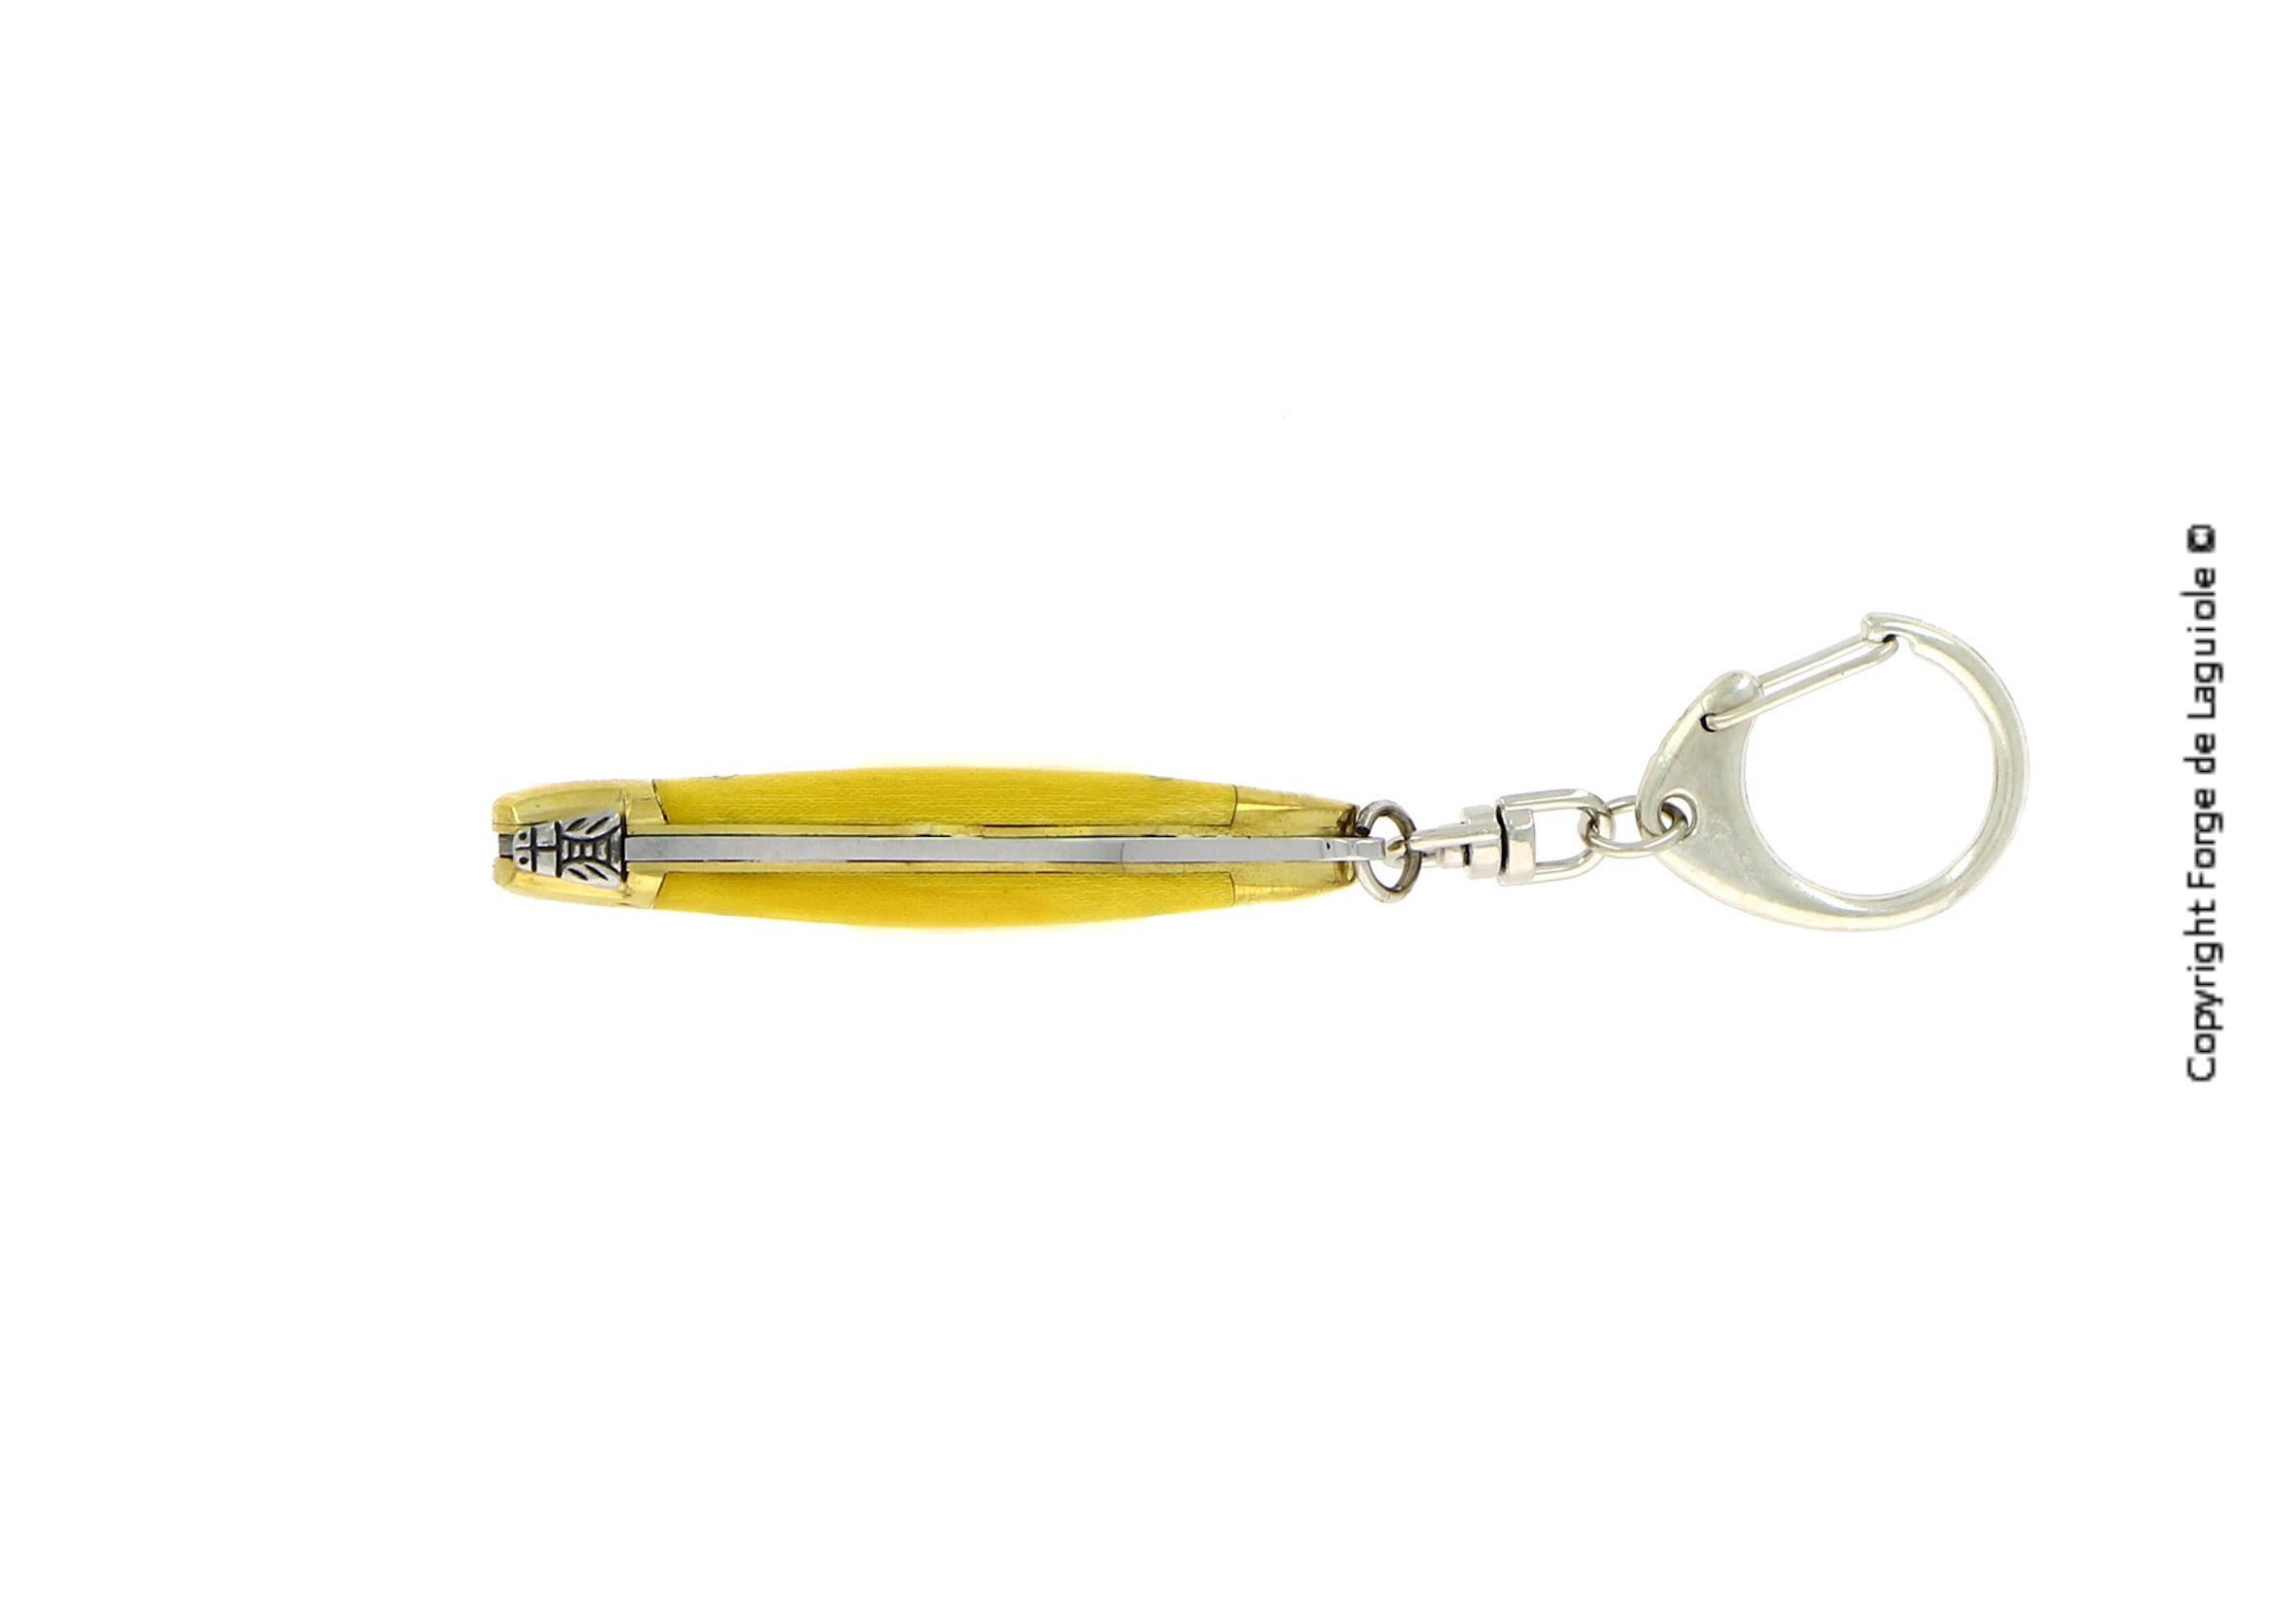 Porte-clefs 7 cm Tissu compressé jaune, mitre Laiton – Laguiole    - Laguiole - Porte-clefs - 